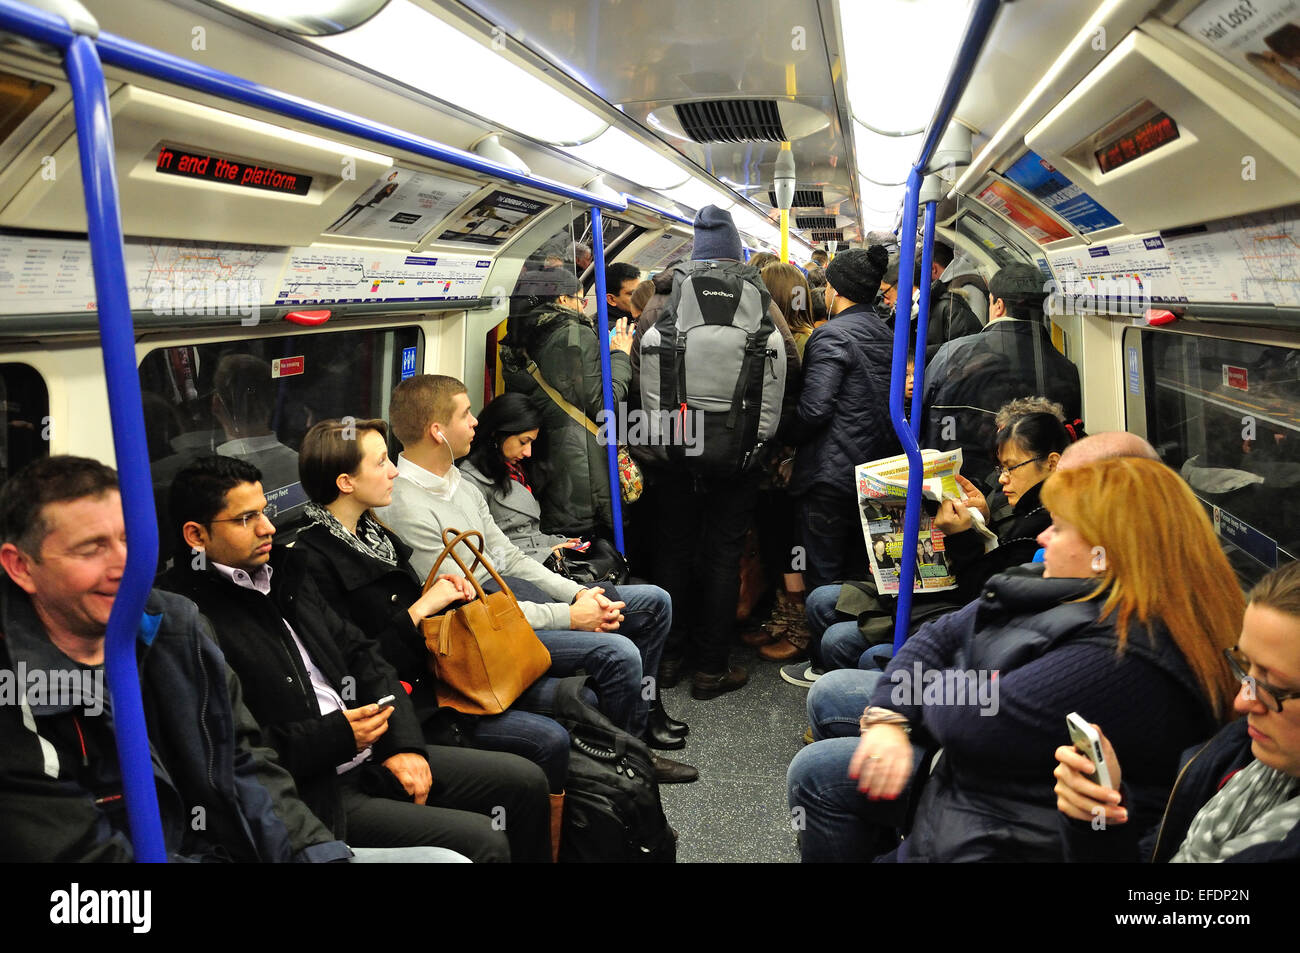 Vue de l'intérieur de la ligne de métro de Londres, Piccadilly Line, Greater London, Angleterre, Royaume-Uni Banque D'Images